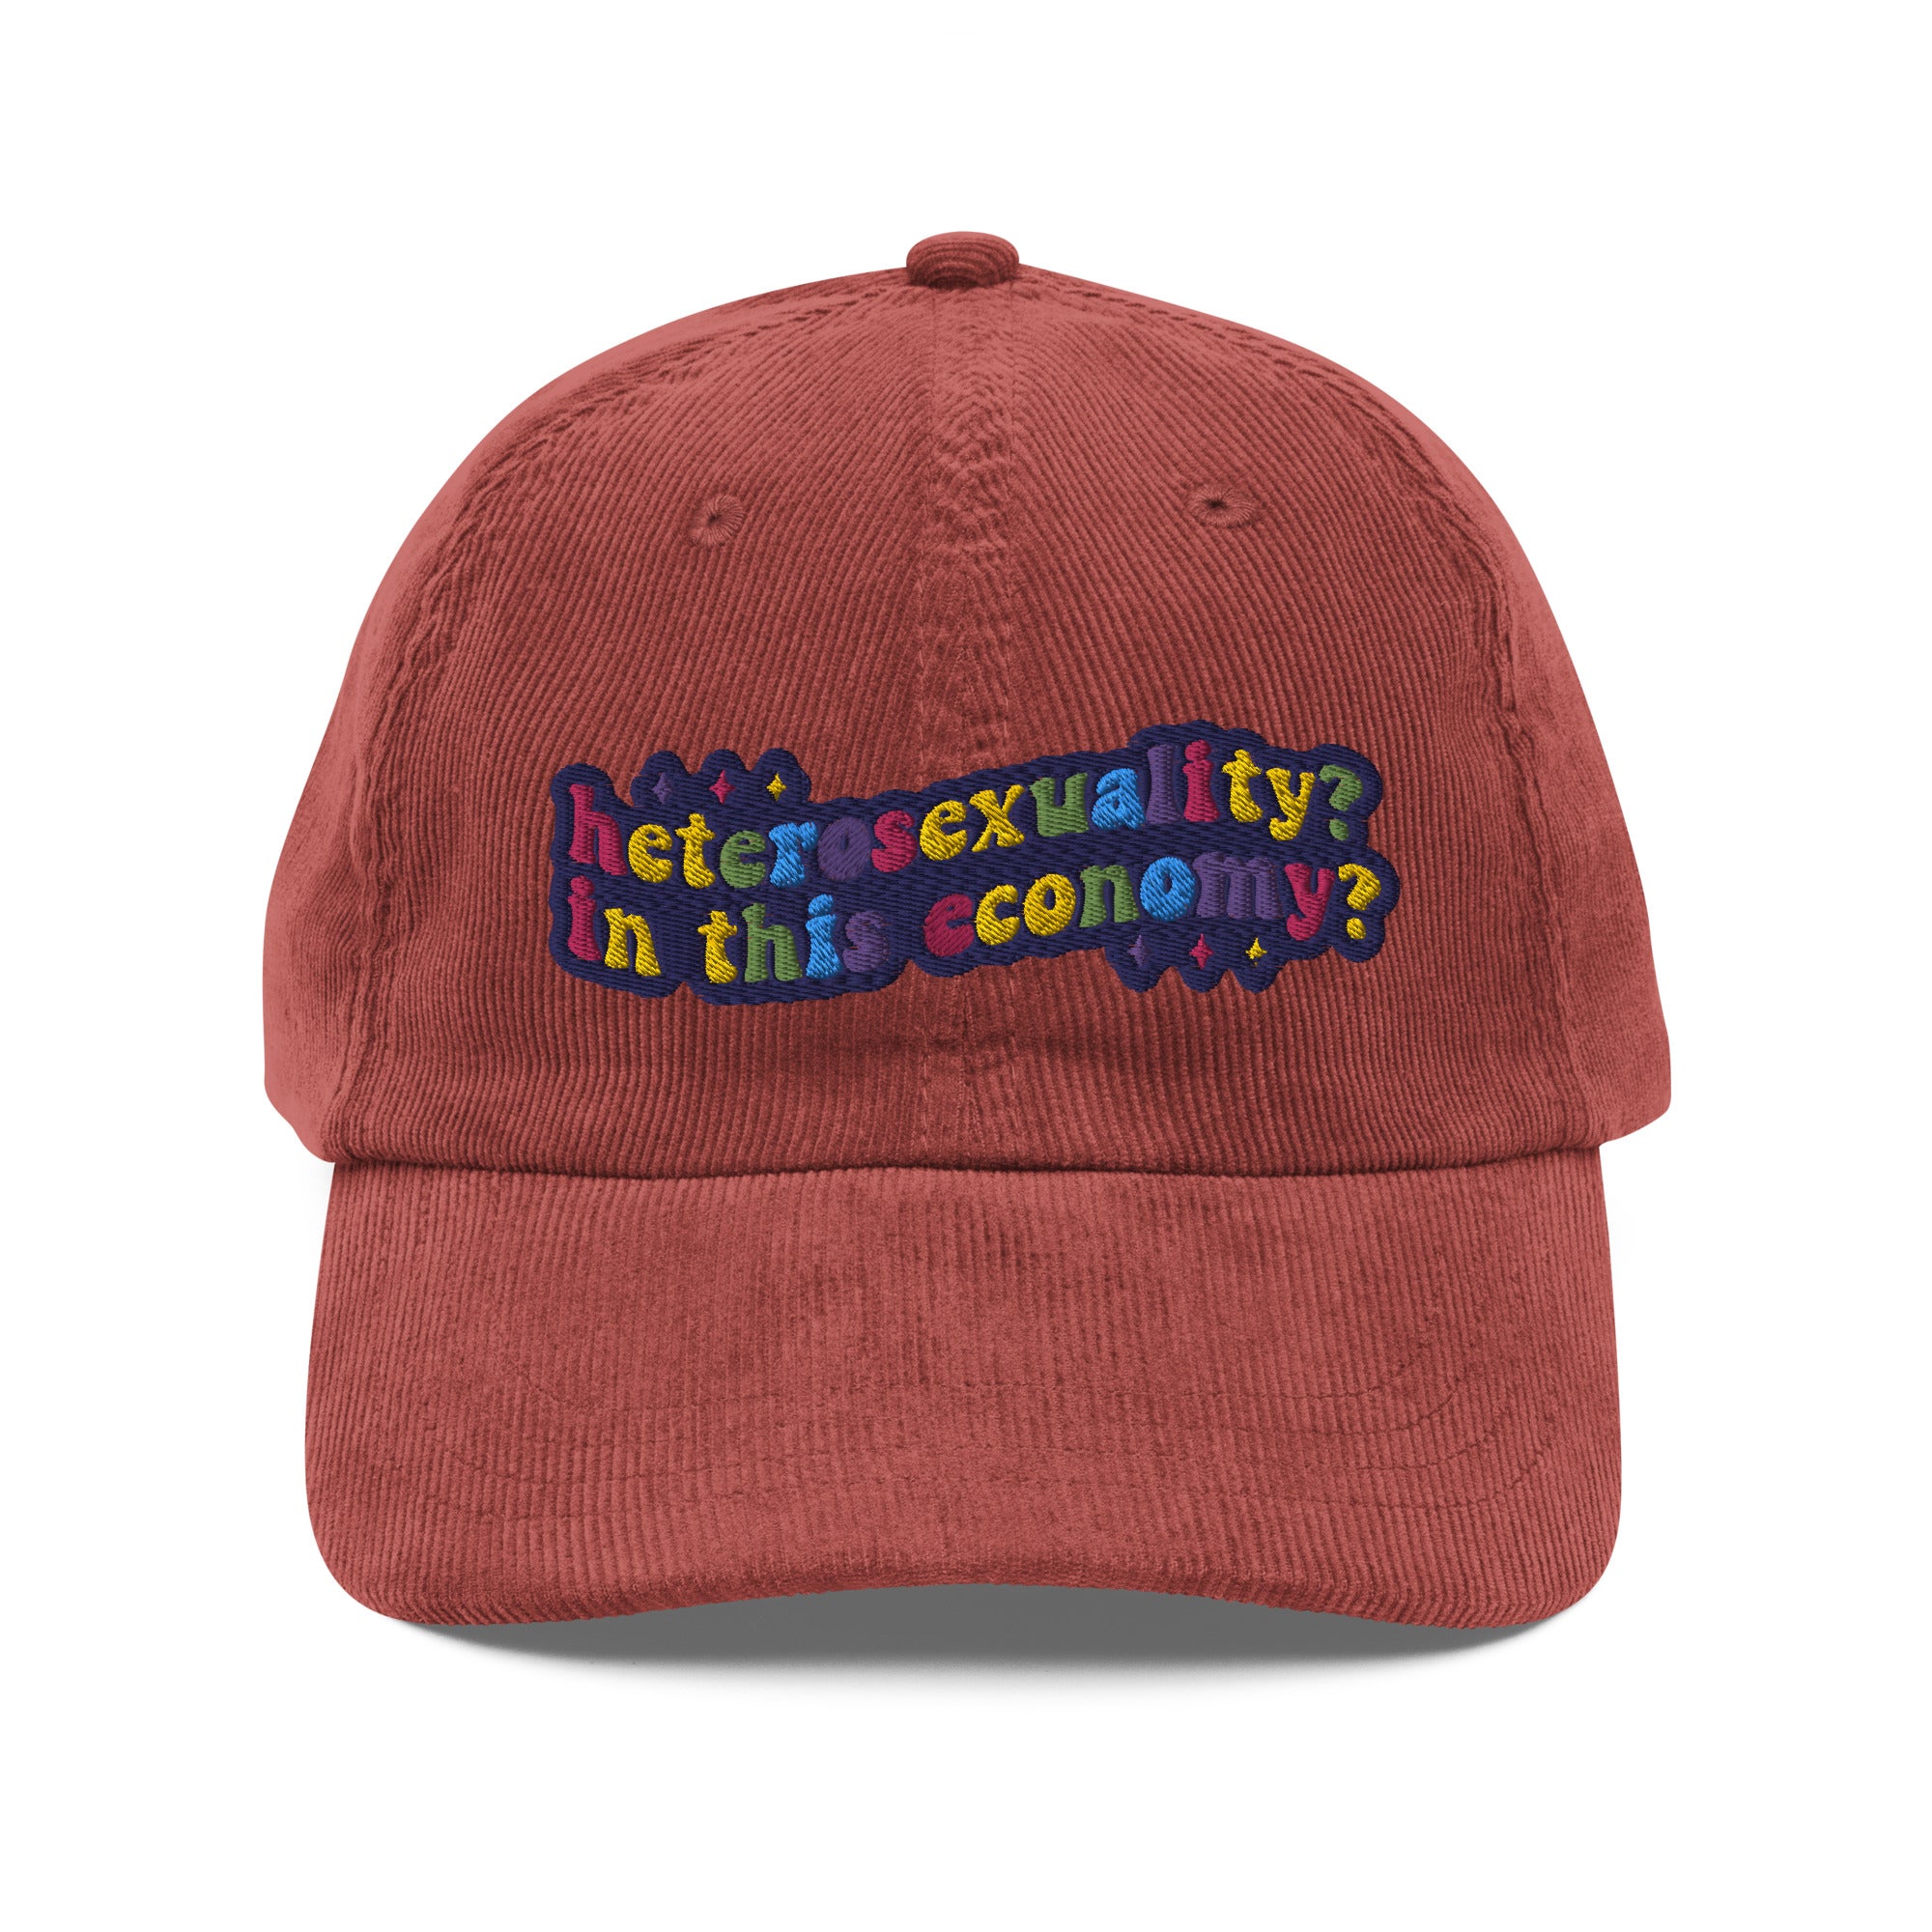 Heterosexuality? In This Economy? Corduroy Hat